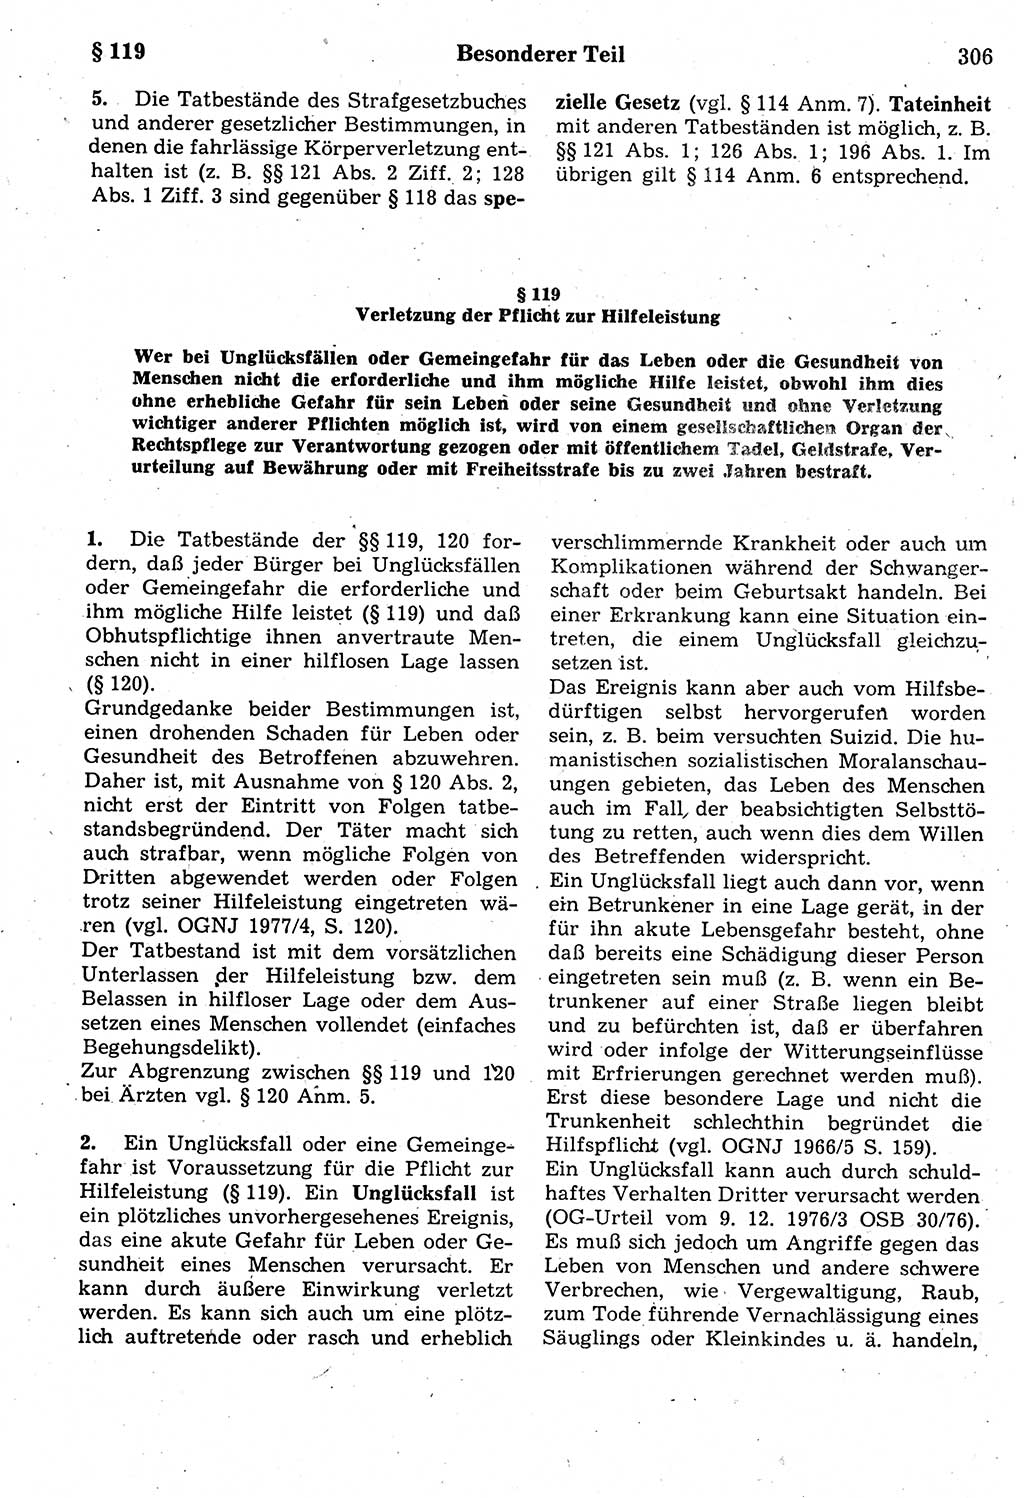 Strafrecht der Deutschen Demokratischen Republik (DDR), Kommentar zum Strafgesetzbuch (StGB) 1987, Seite 306 (Strafr. DDR Komm. StGB 1987, S. 306)